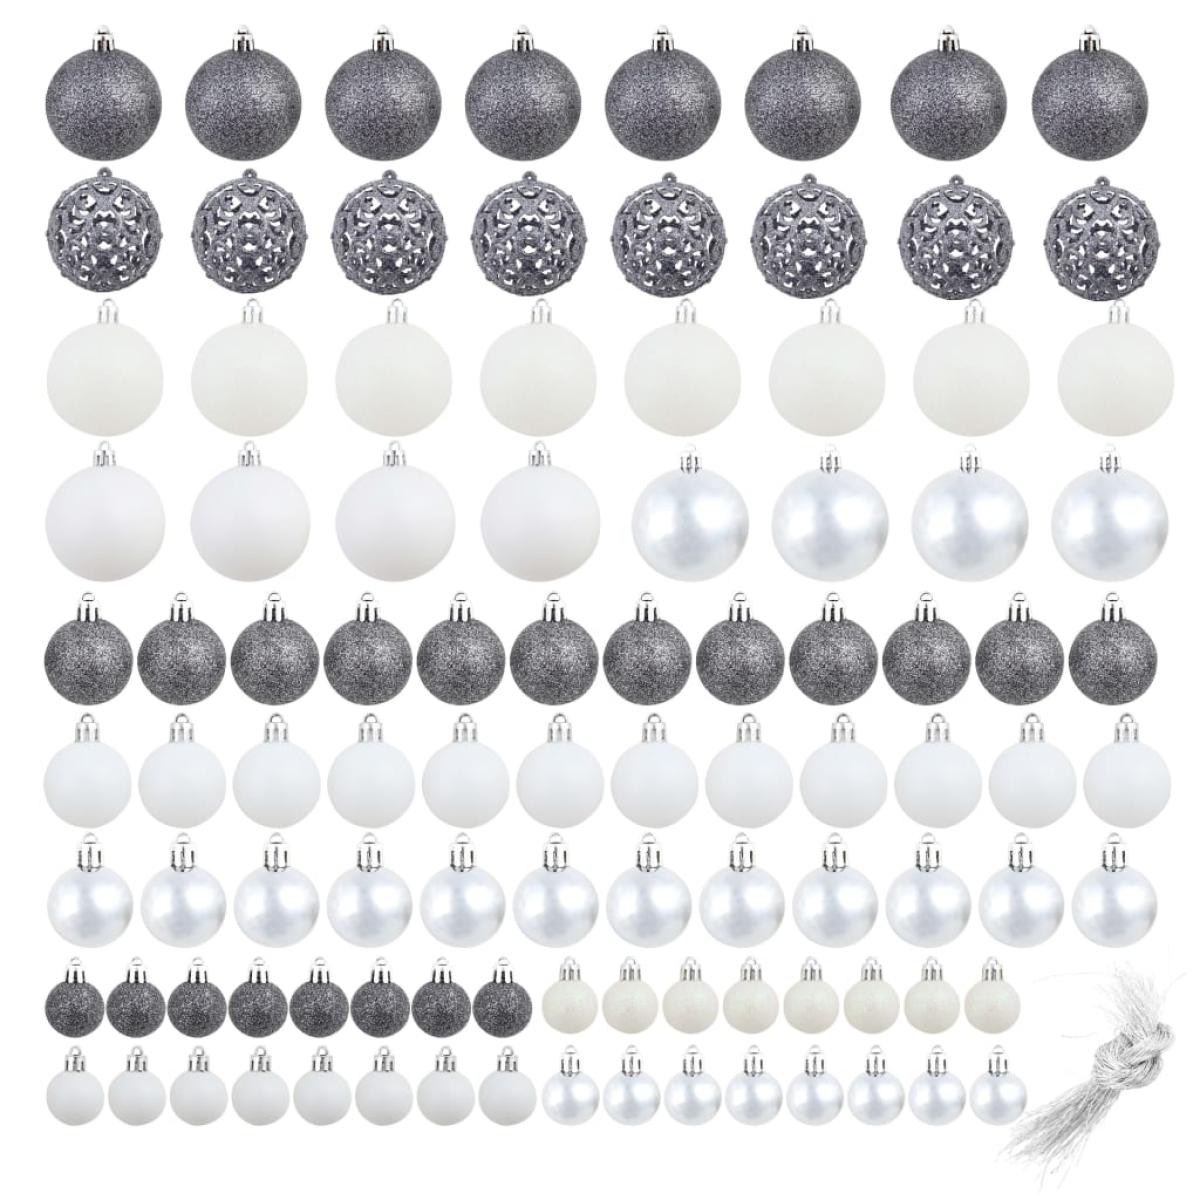 Lote de bolas de Navidad 100 unidades blanco/gris 3/4/6 cm